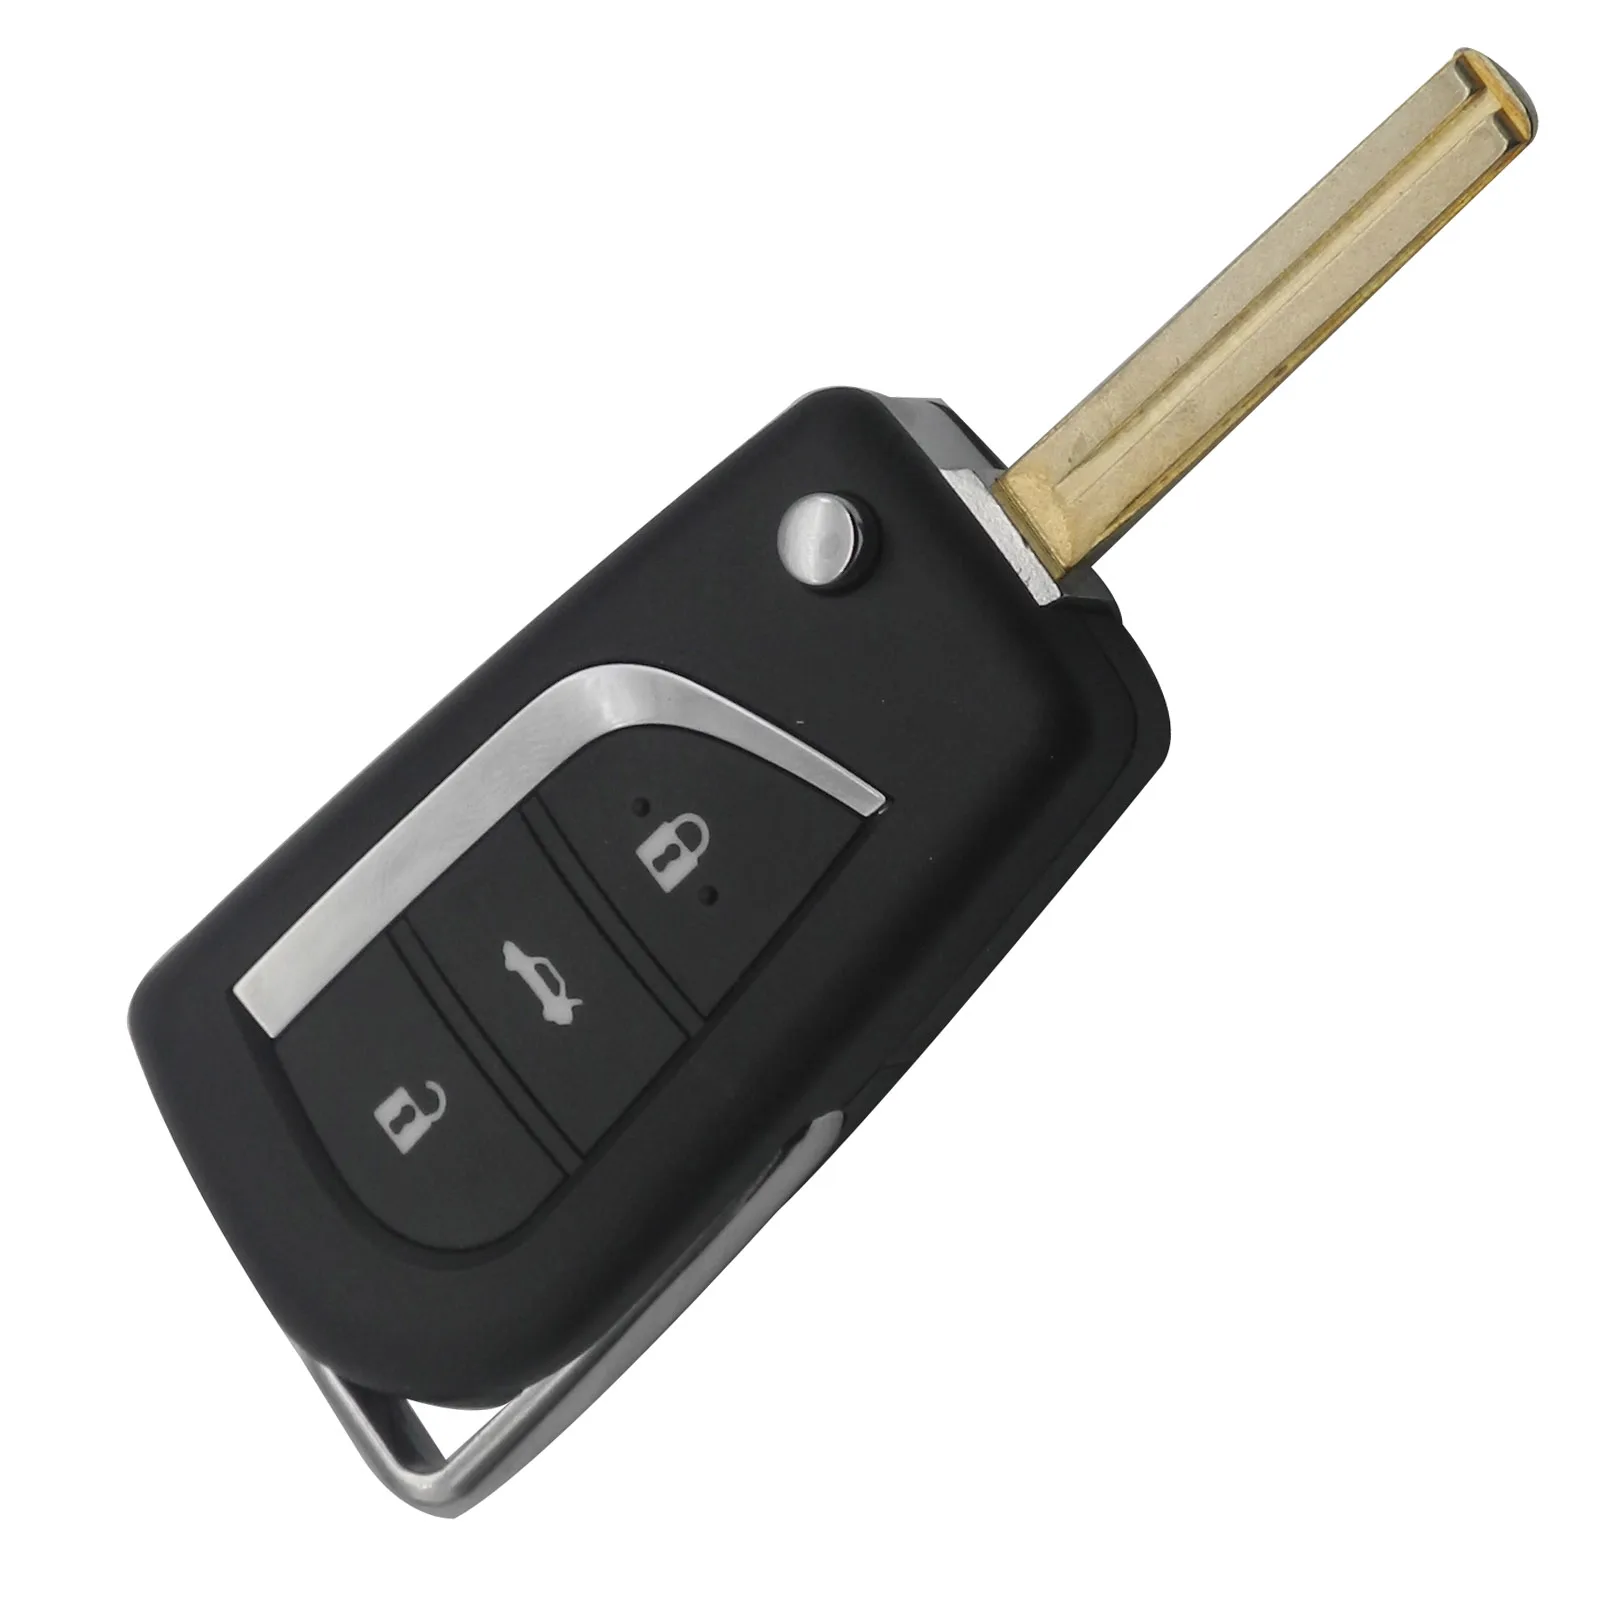 Jingyuqin 2/3 кнопочный пульт дистанционного управления откидной складной чехол для ключа автомобиля для Toyota RAV4 Lewin Camry eiz Highlander Corolla Yaris